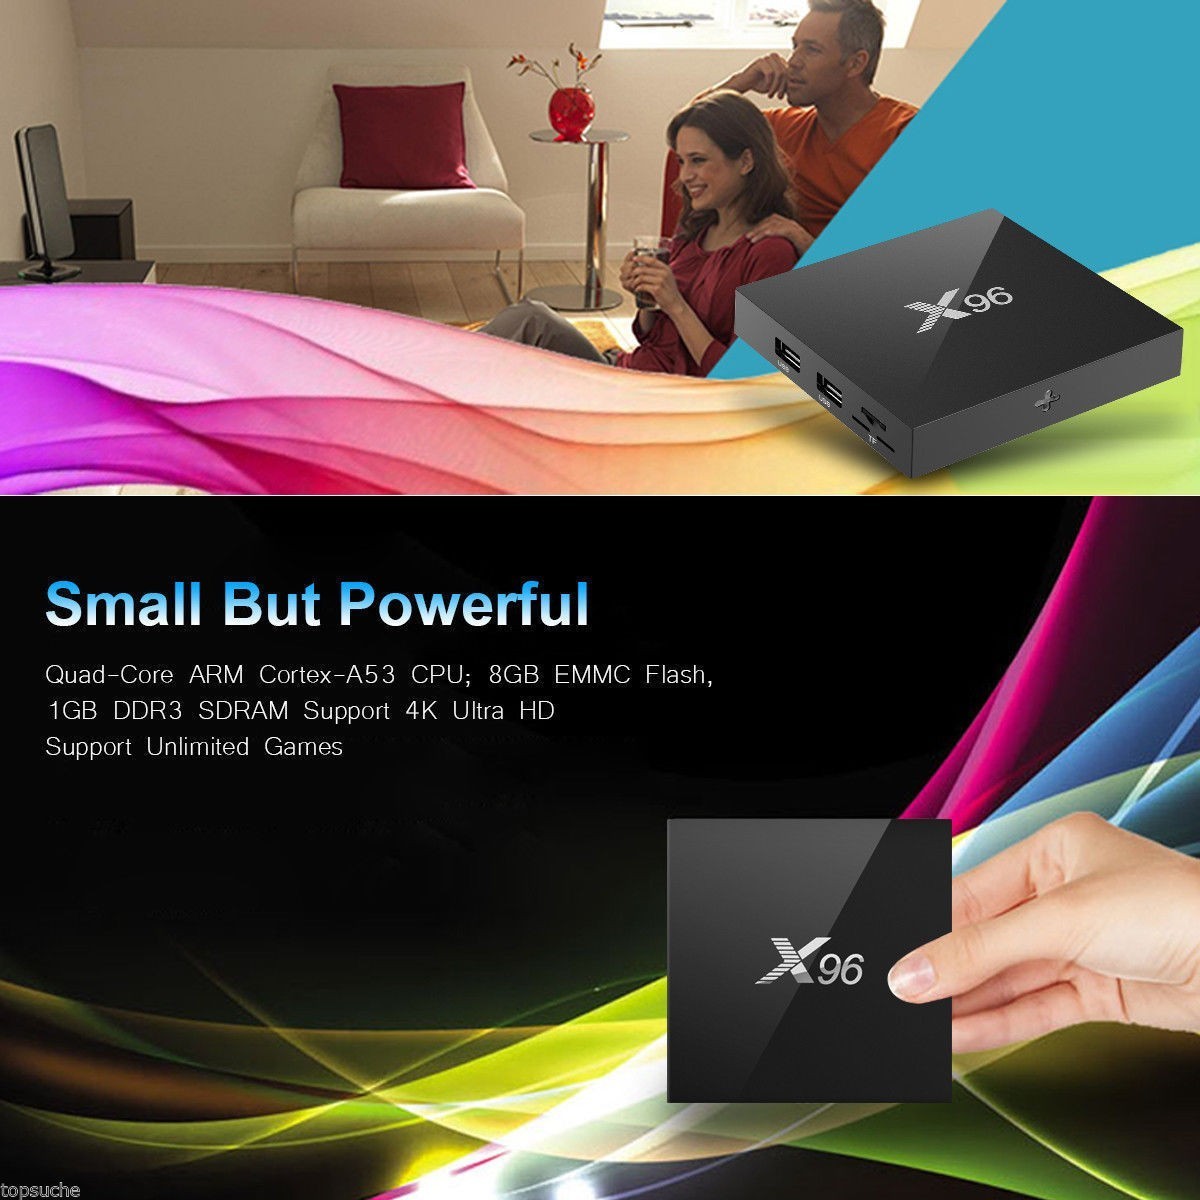 Décodeur multimédias Smart TV Box Android 7.1 X96 1G/8G